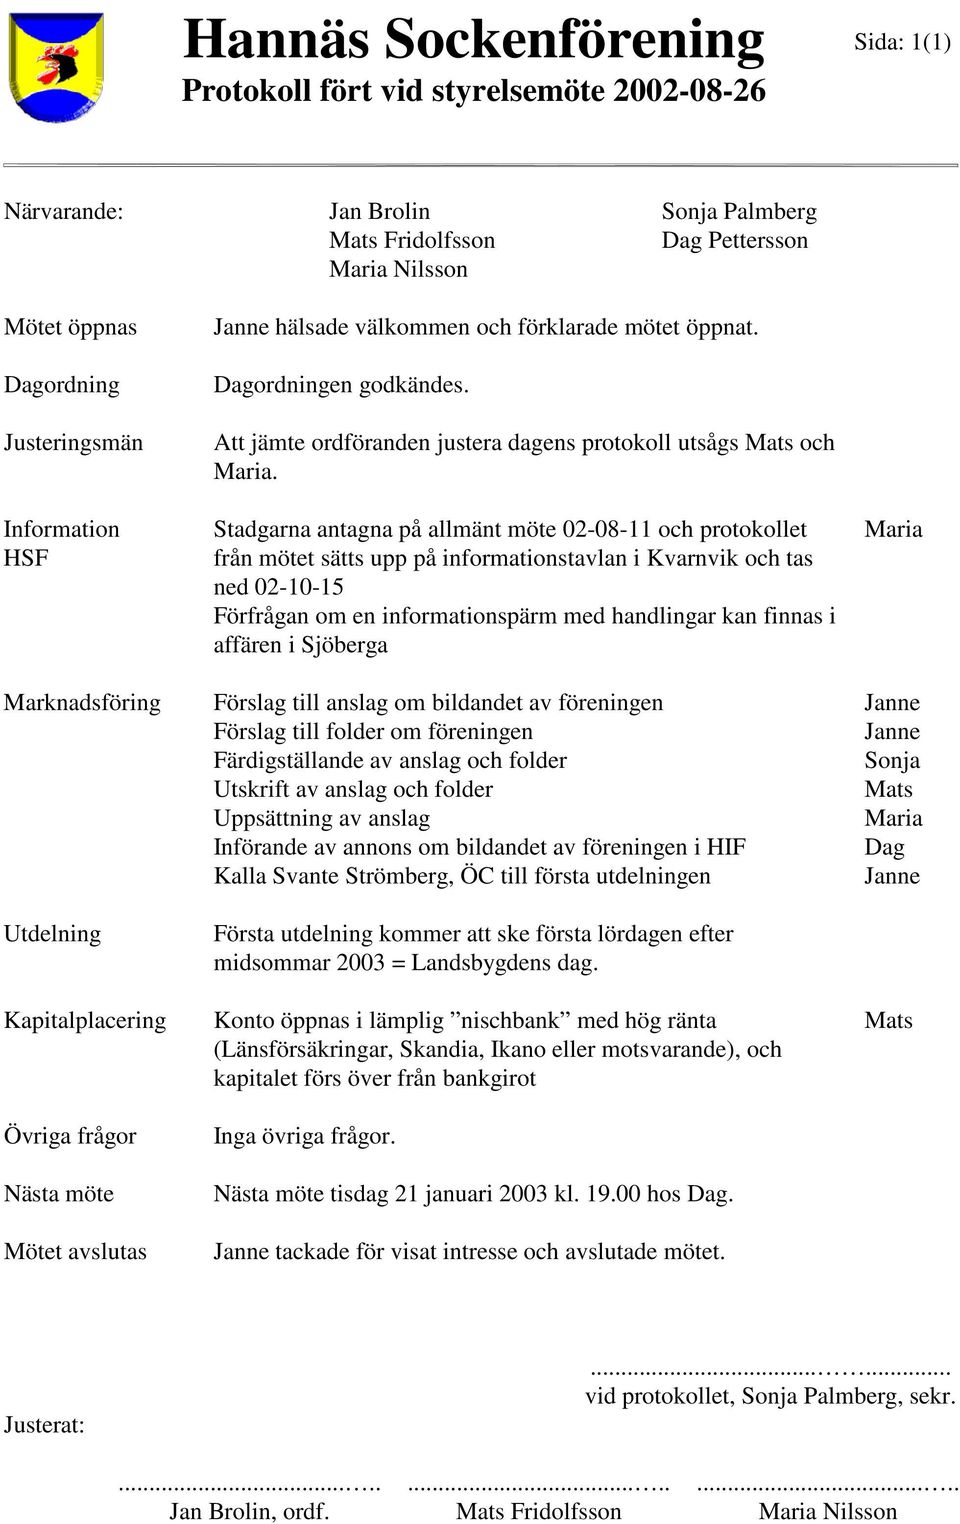 Stadgarna antagna på allmänt möte 02-08-11 och protokollet från mötet sätts upp på informationstavlan i Kvarnvik och tas ned 02-10-15 Förfrågan om en informationspärm med handlingar kan finnas i